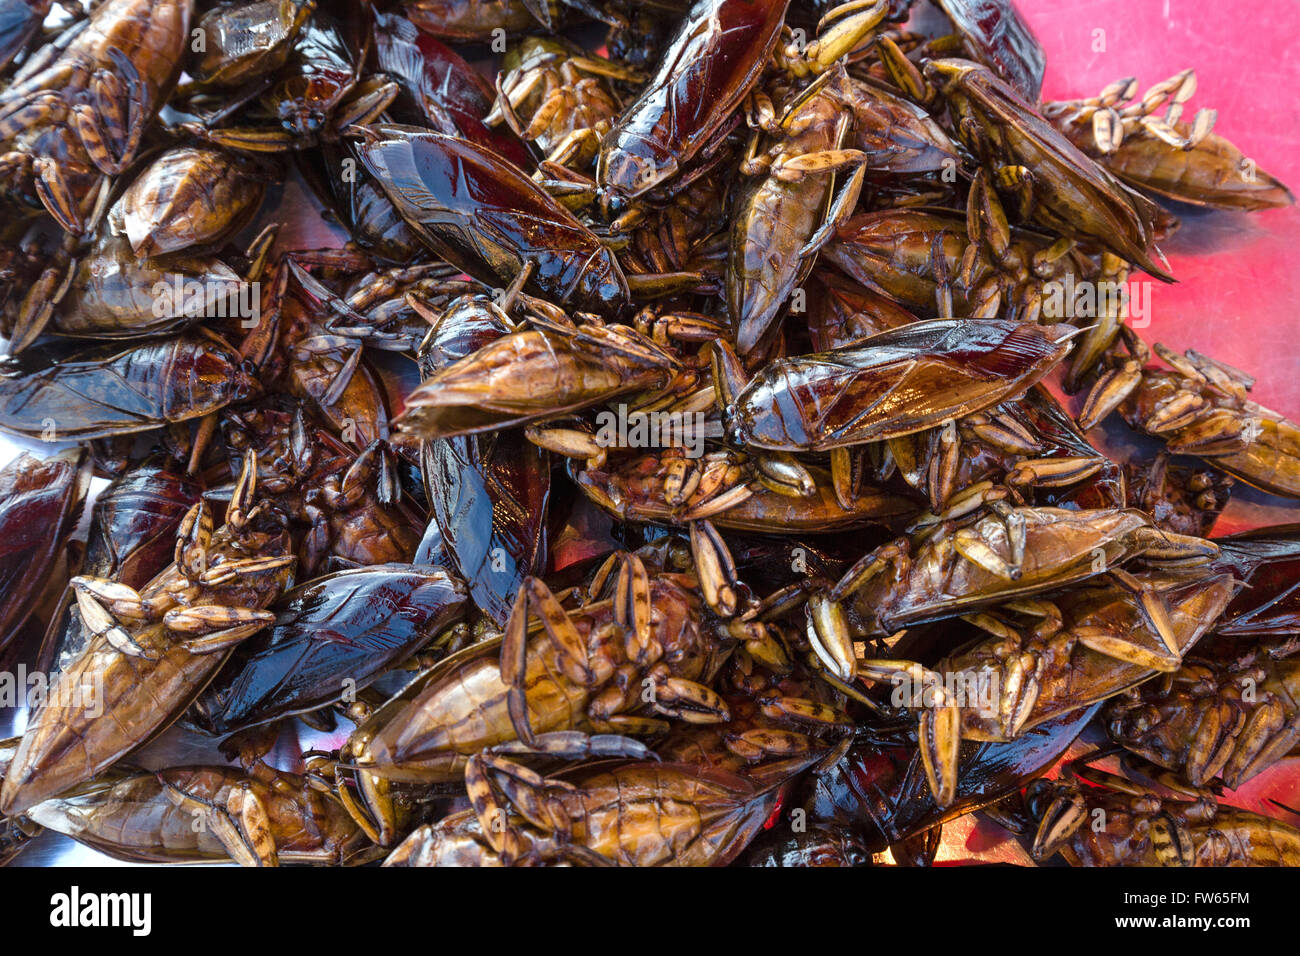 Mangda, Fried water bugs (Lethocerus indicus) sur un marché, les insectes comestibles, de la cuisine thaïlandaise, spécialité, Thaïlande Banque D'Images